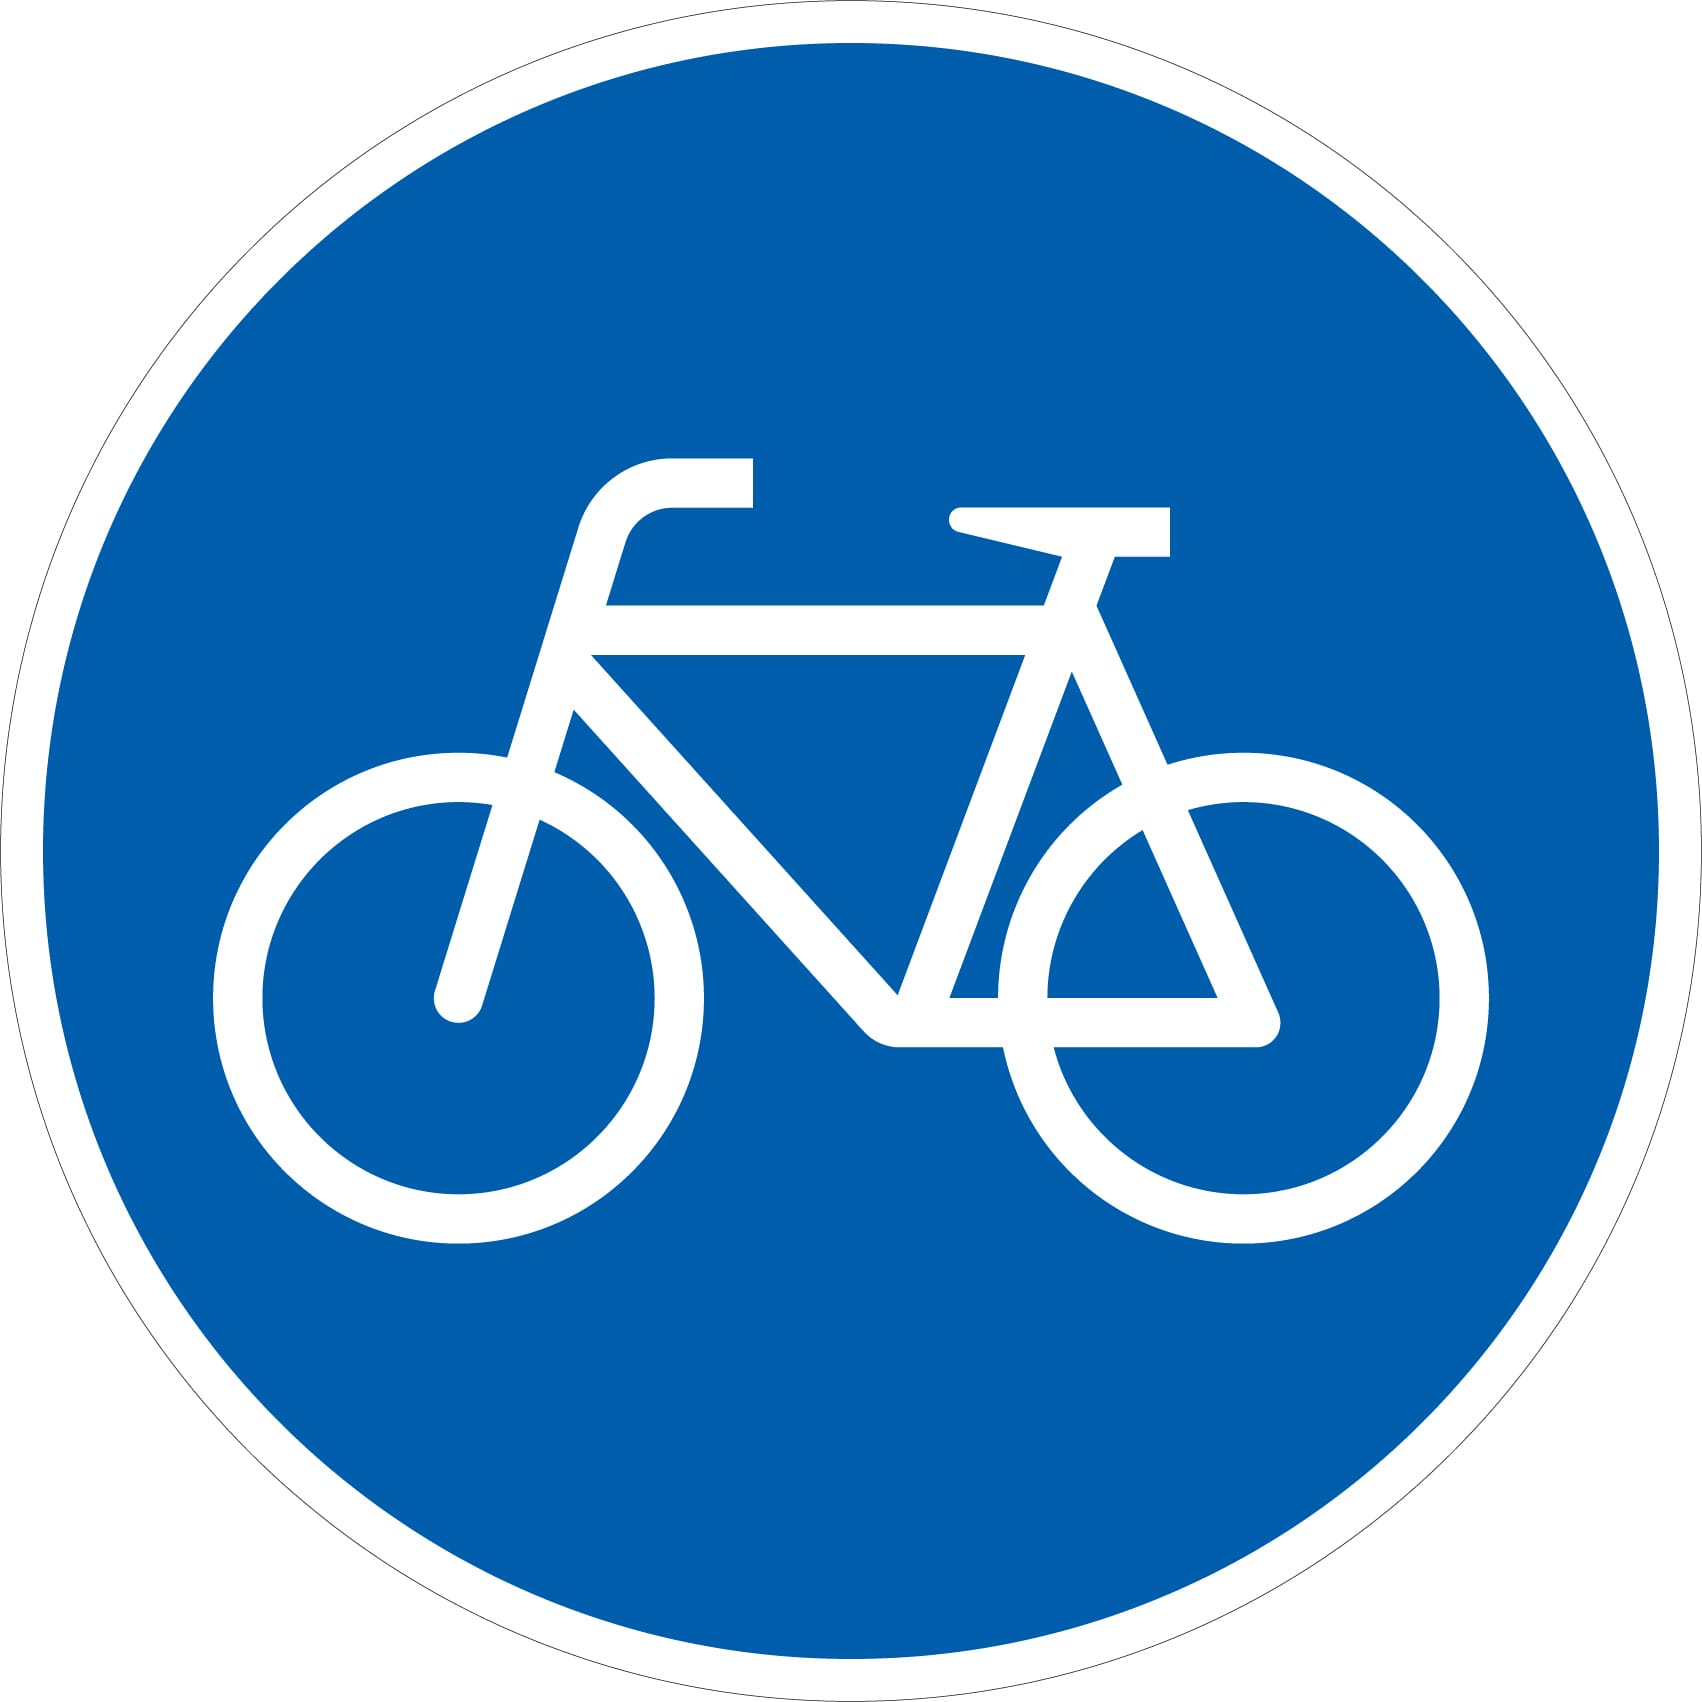 Radfahrer müssen bei diesem Zeichen einen Radweg benutzen.